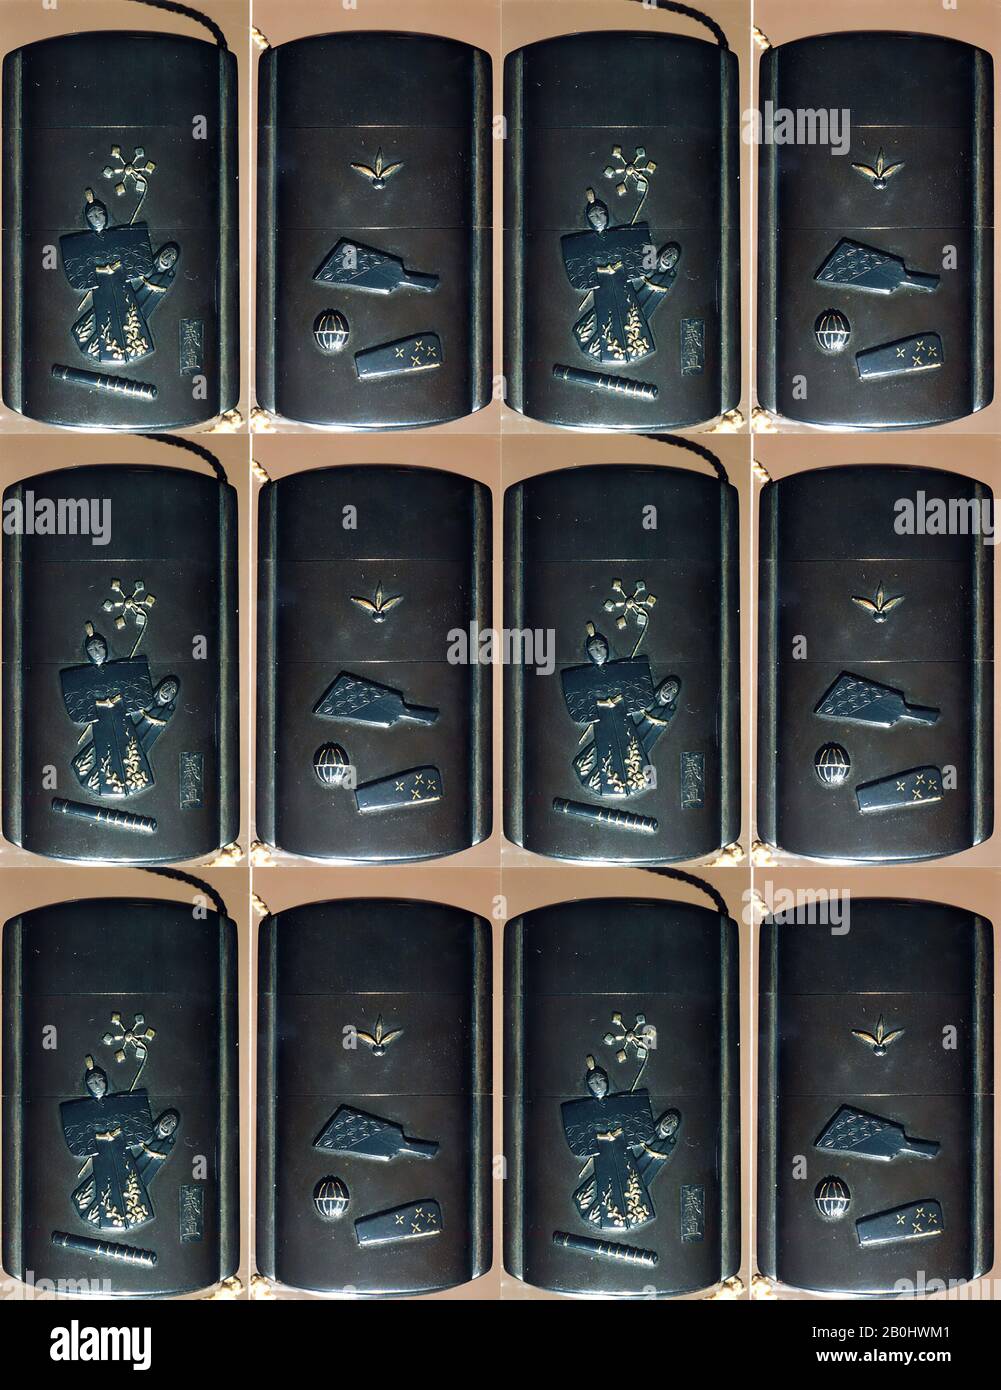 Case (Inrō) mit Symbolen des Girls' Festivals (obverse); Embleme für das New Year Festival (Reverse), Japan, 19. Jahrhundert, Japan, Metall, dunkelsilberner Metallboden, aufgebrachte Silber- und Goldmetalle; Interieur: Schwarzer Lack und silbernes Metall, 2 5/8 x 1 9/16 x 13 / 16 Zoll (6,6 x 3,9 x 2 cm), Inrō Stockfoto